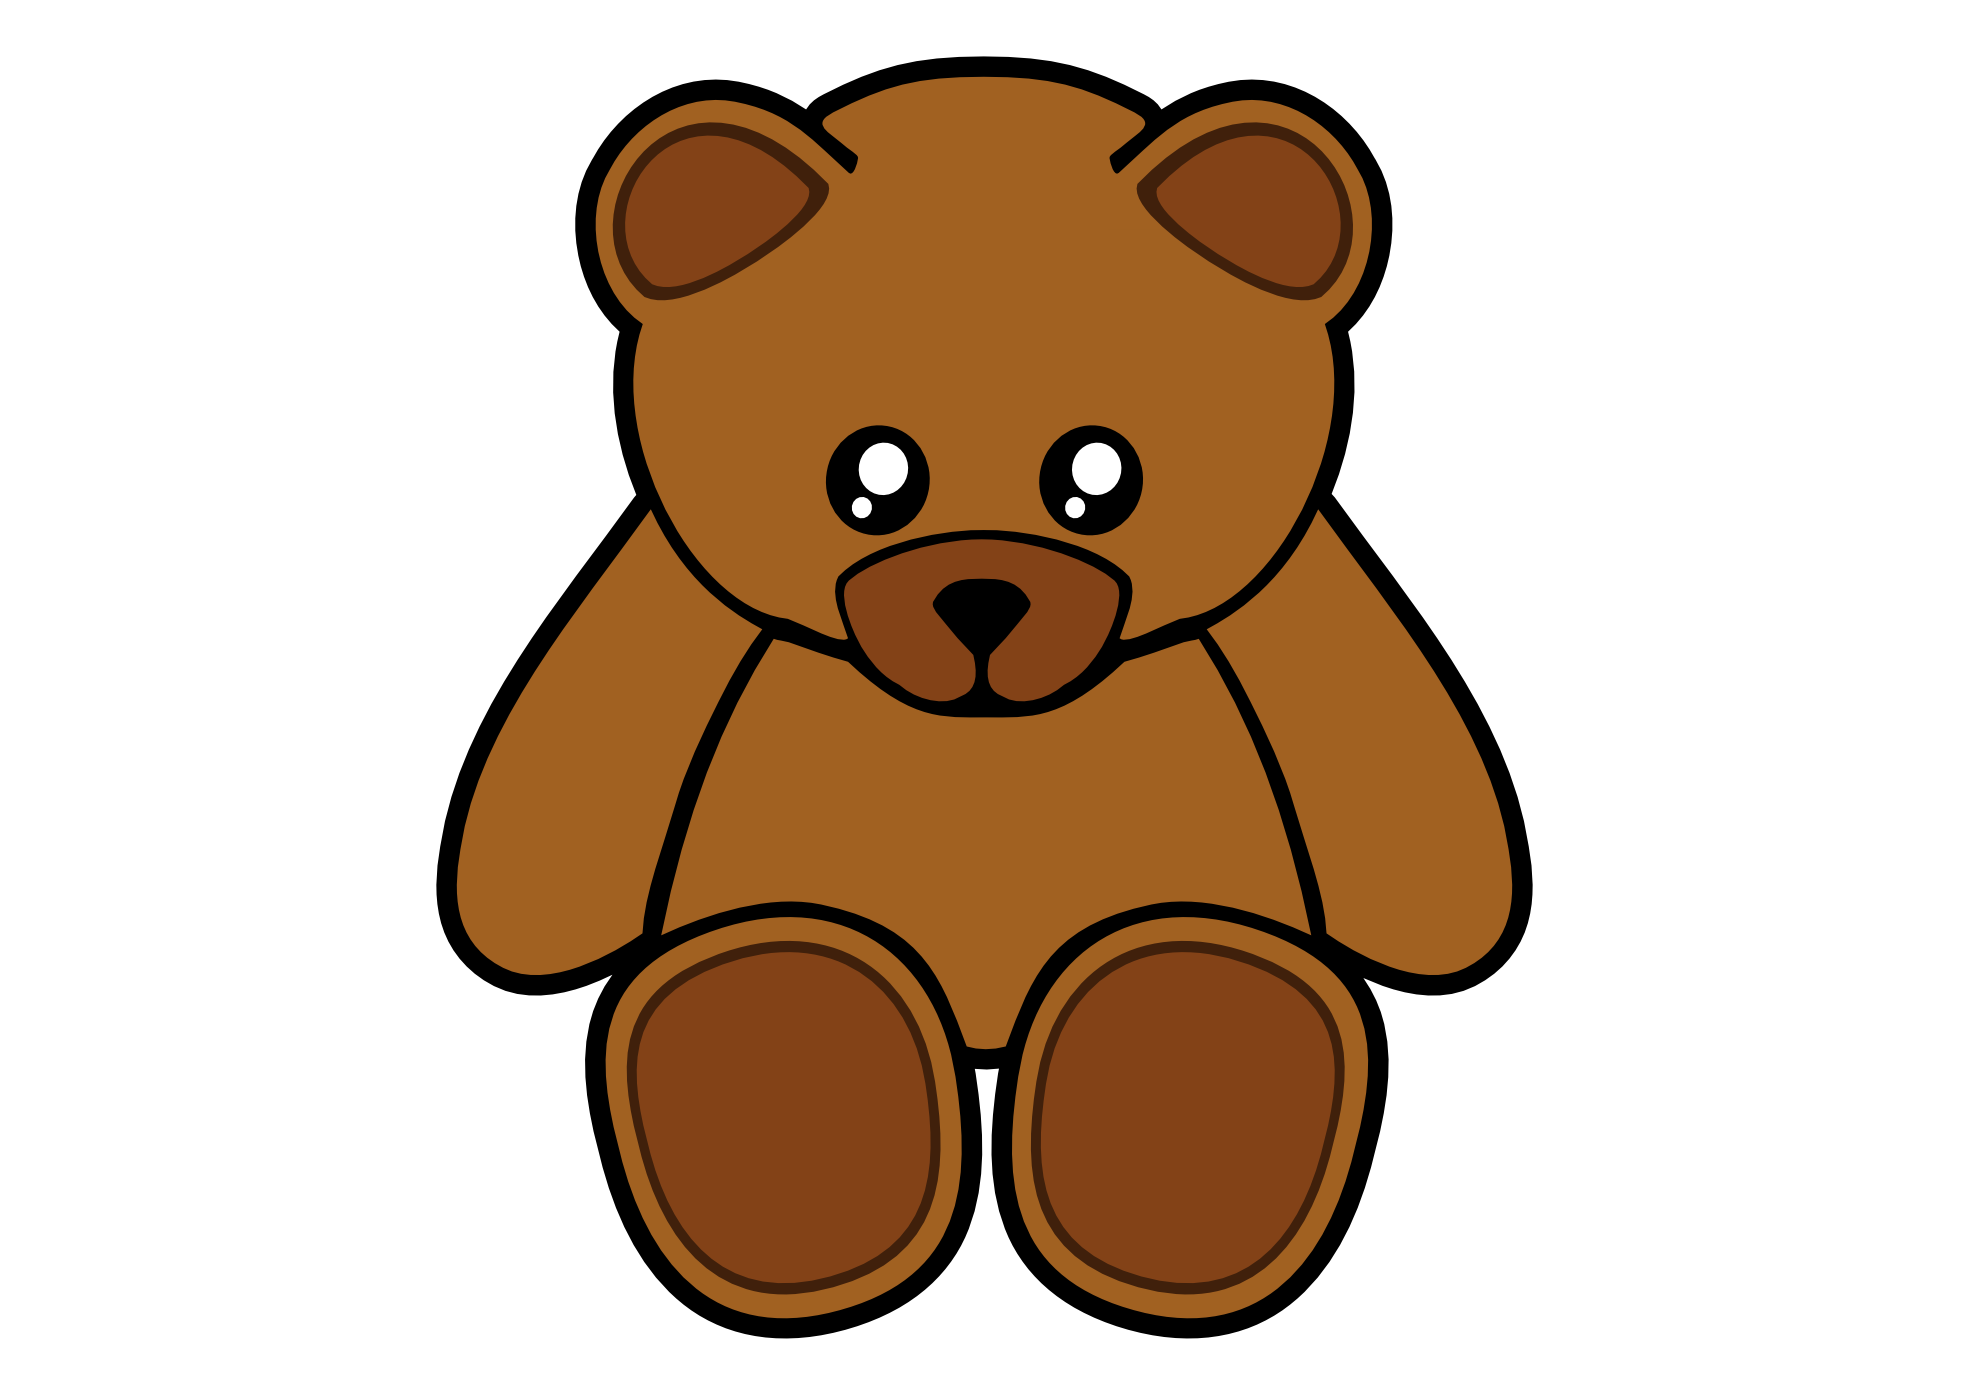 Clip Art: simple teddy bear clipartist.net 2012 ...